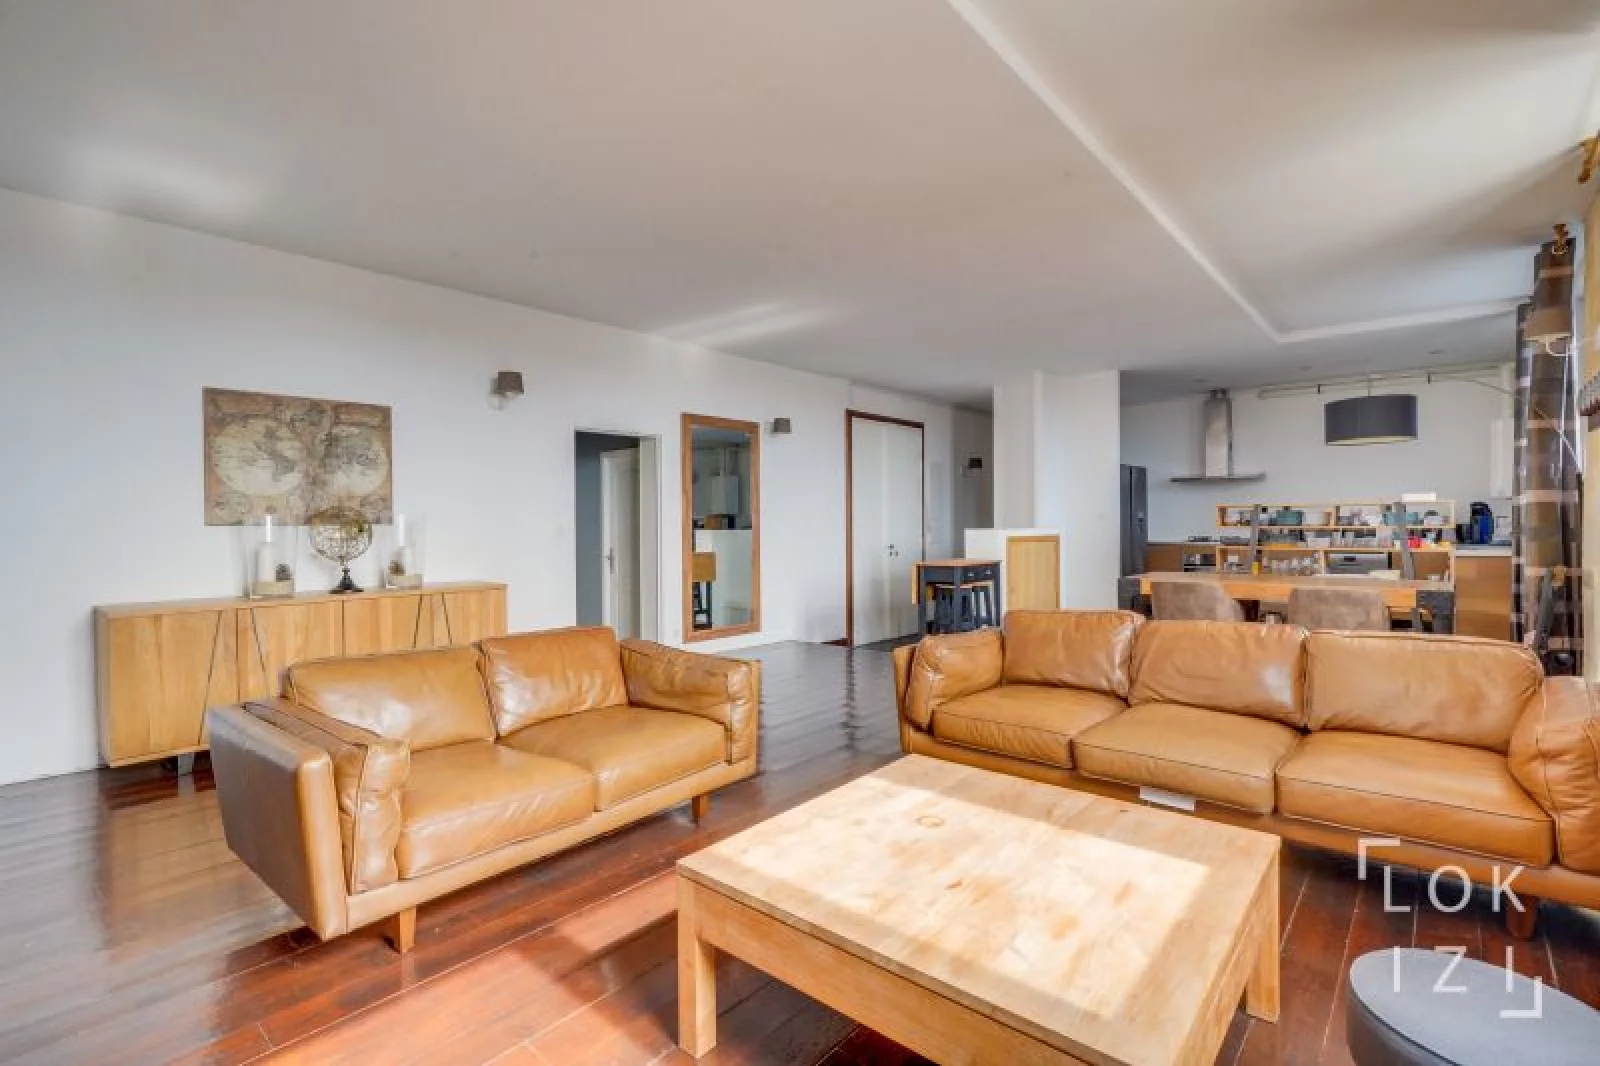 Location appartement meublé 4 pièces 116m² (Bordeaux centre)